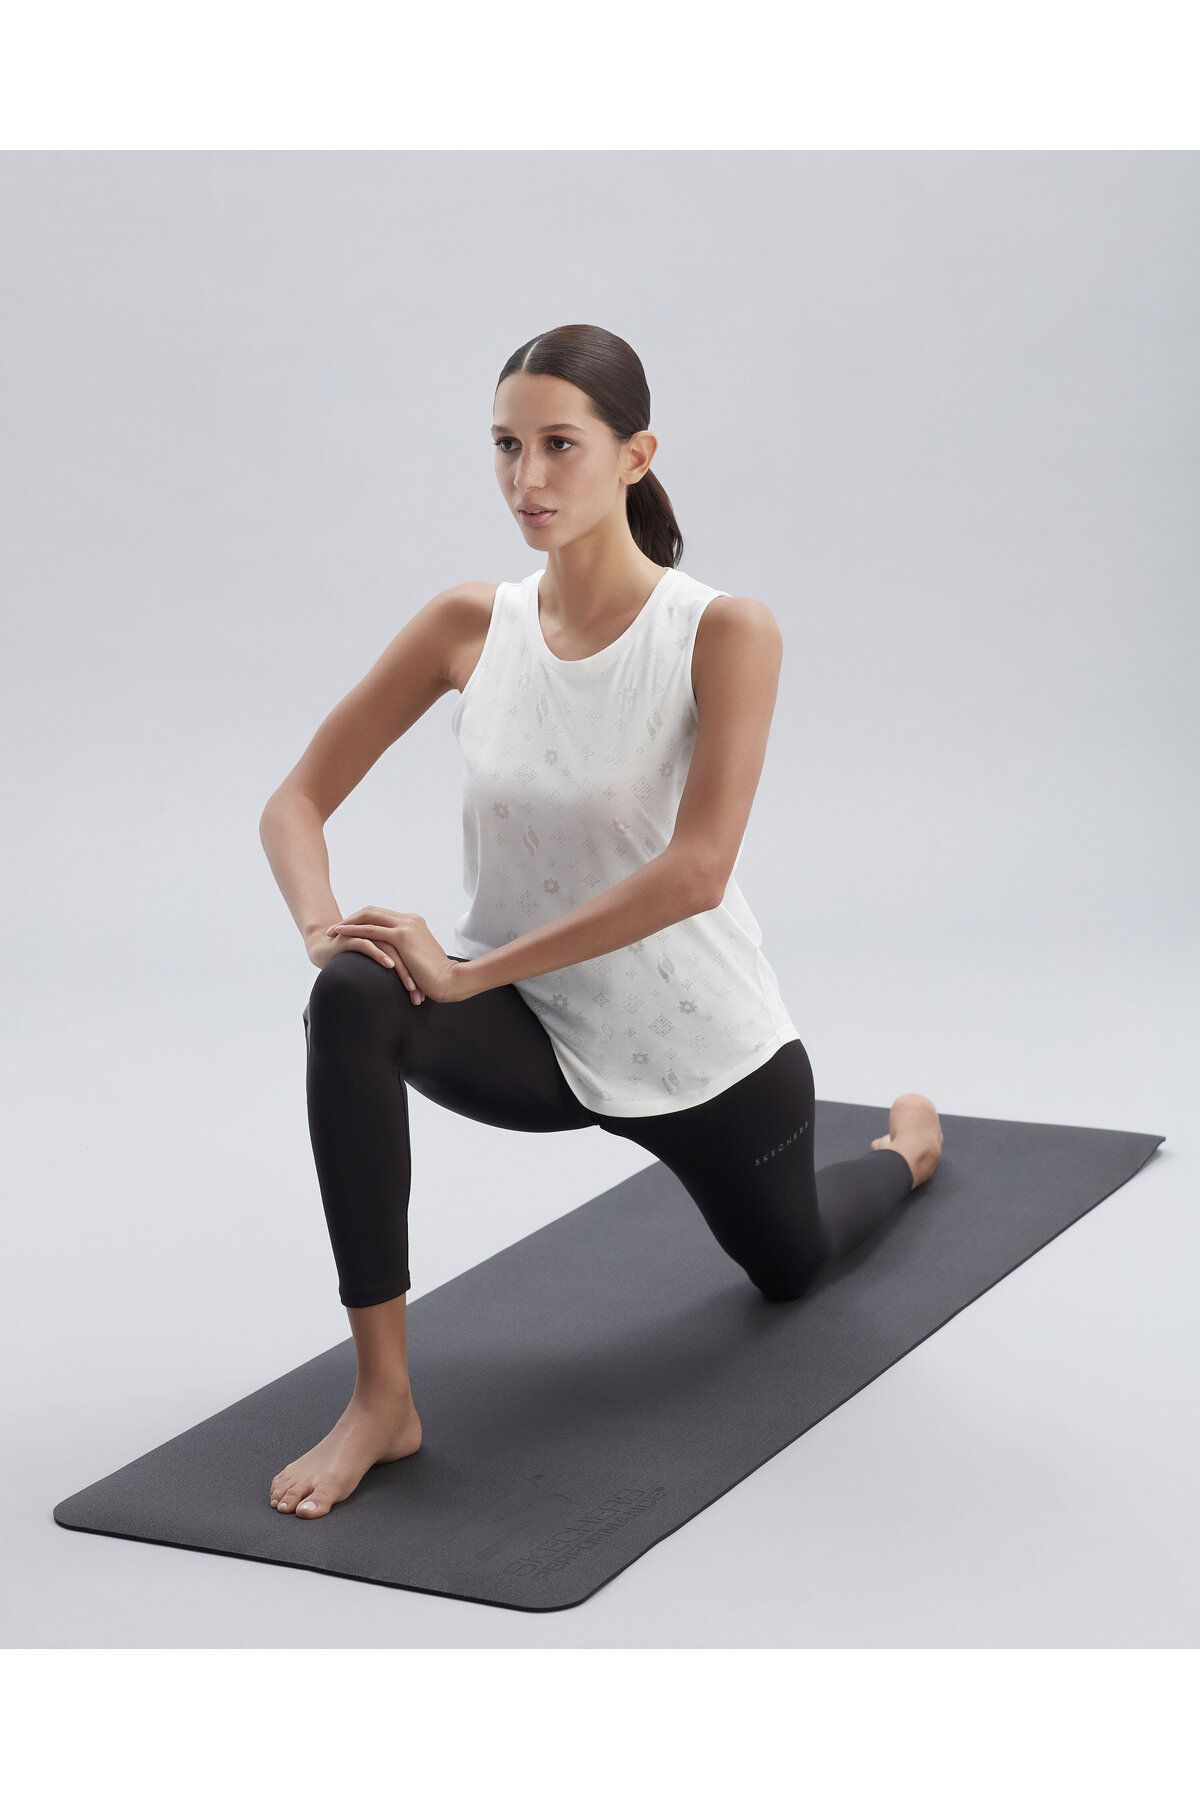 Skechers Yoga Mat Rubber Unisex Siyah Yoga Matı Sfyyr110blk Fiyatı,  Yorumları - Trendyol